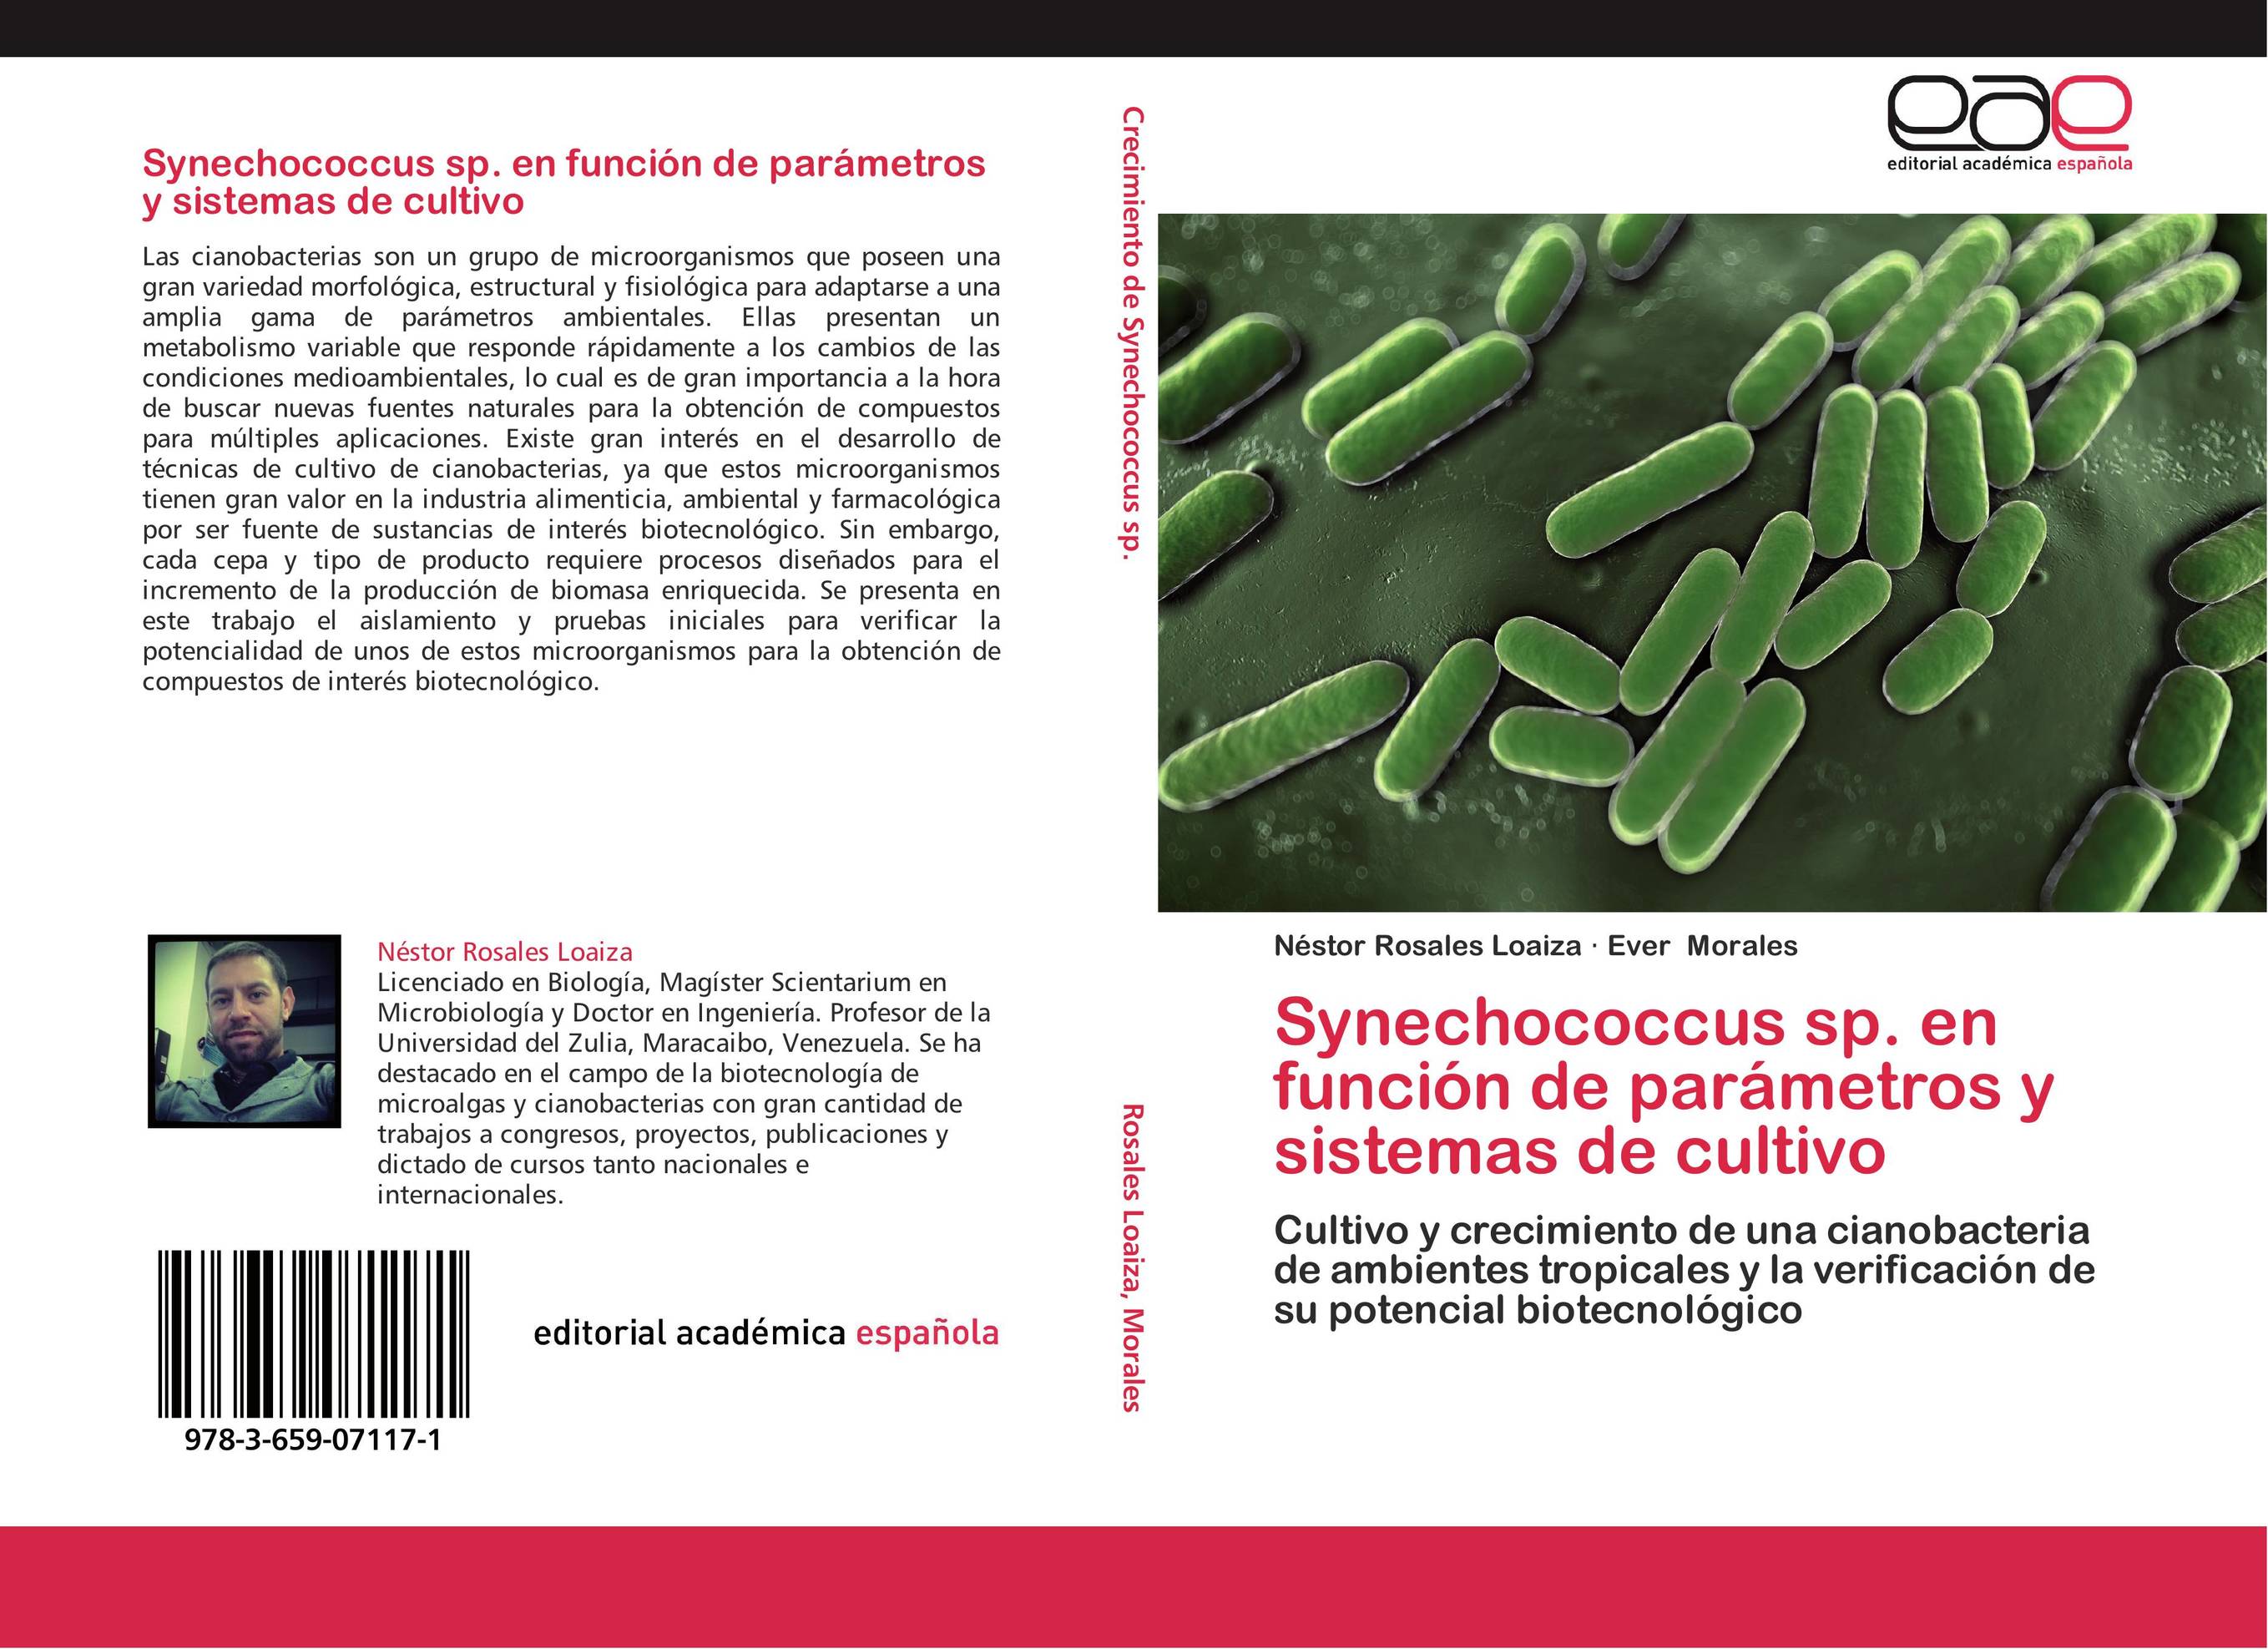 Synechococcus sp. en función de parámetros y sistemas de cultivo